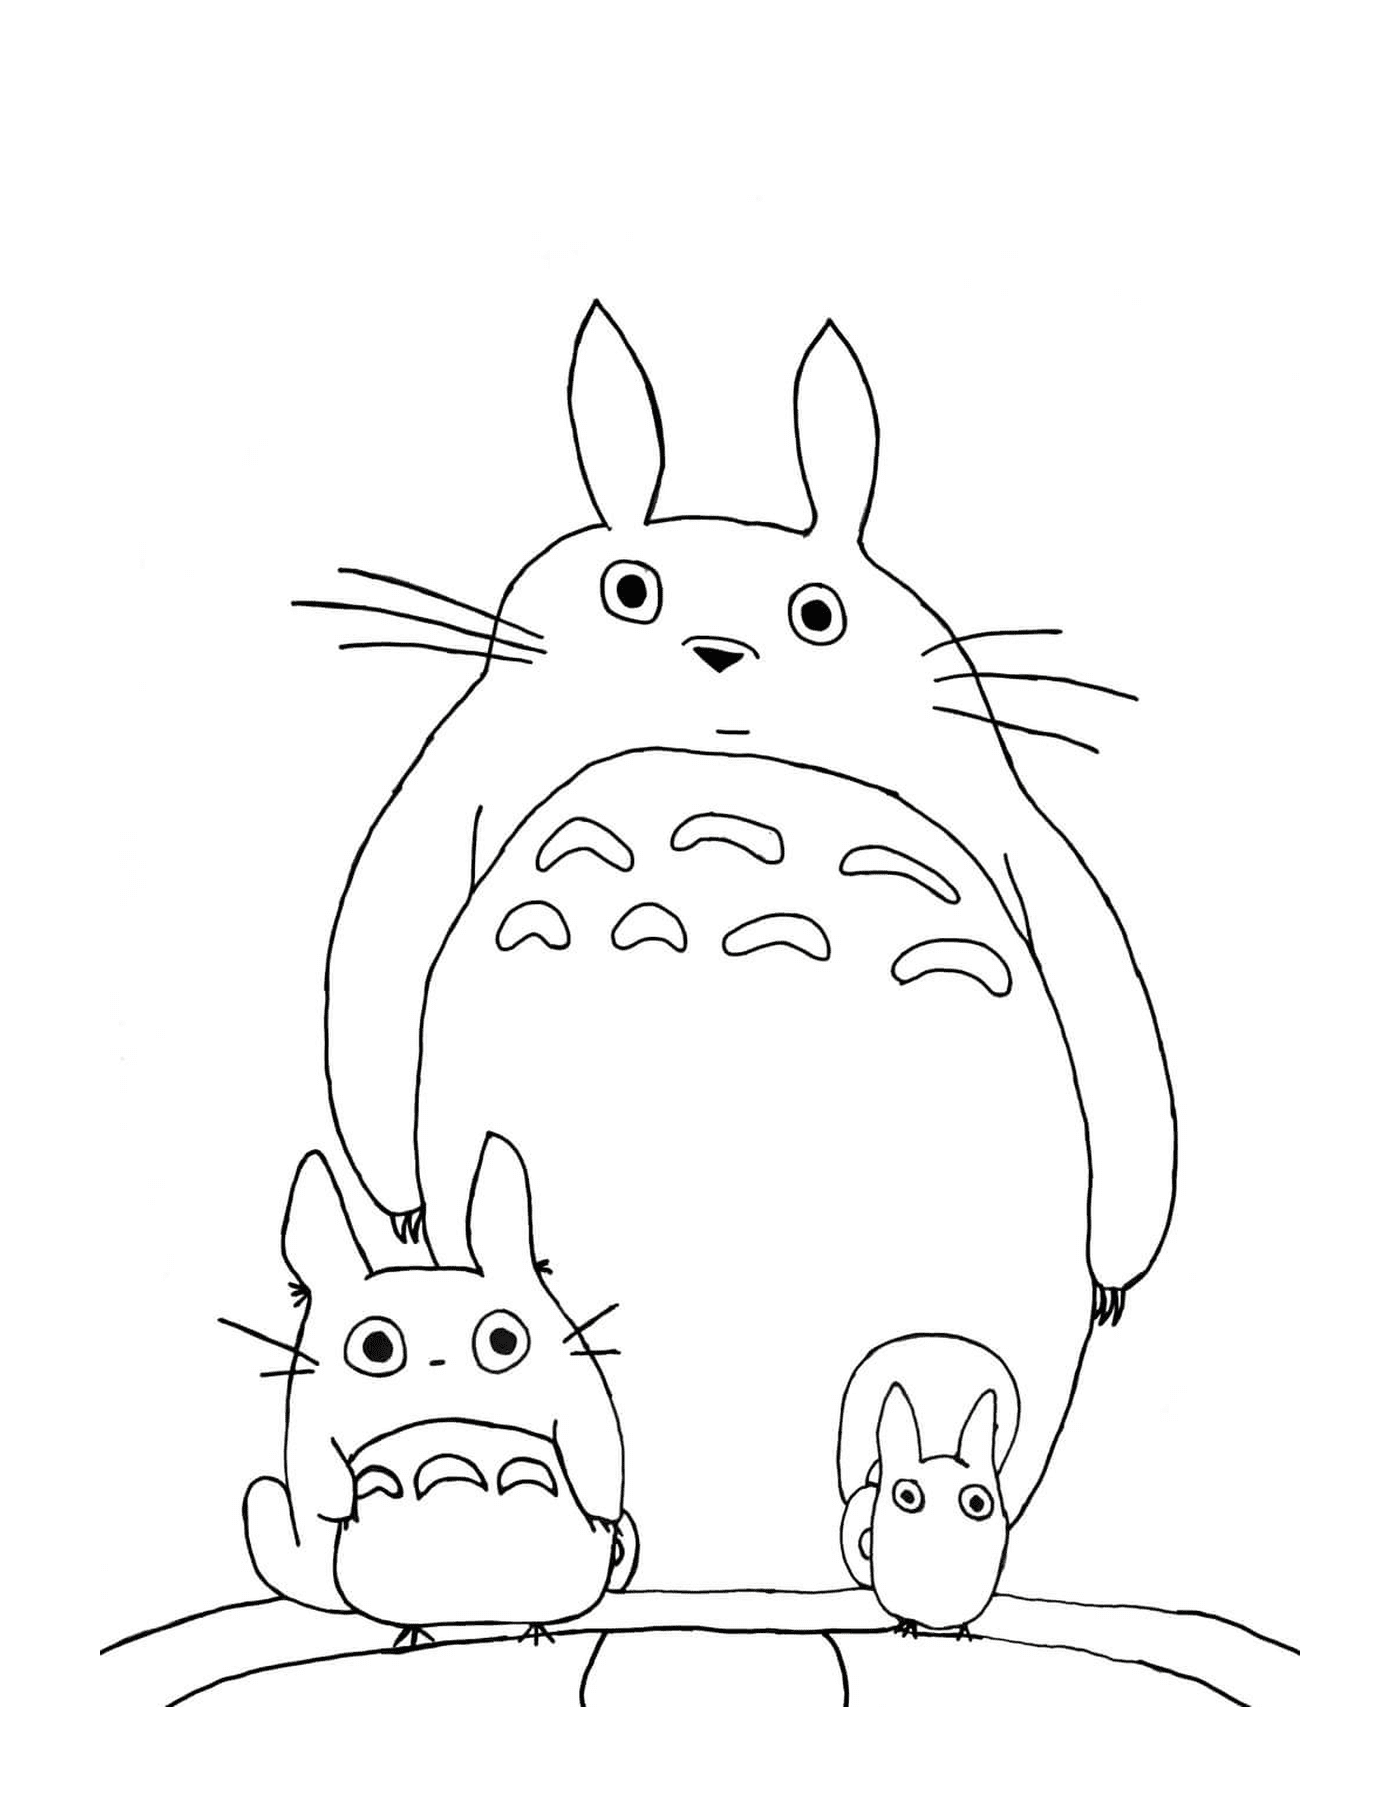   Totoro et un chien se tenant côte à côte 